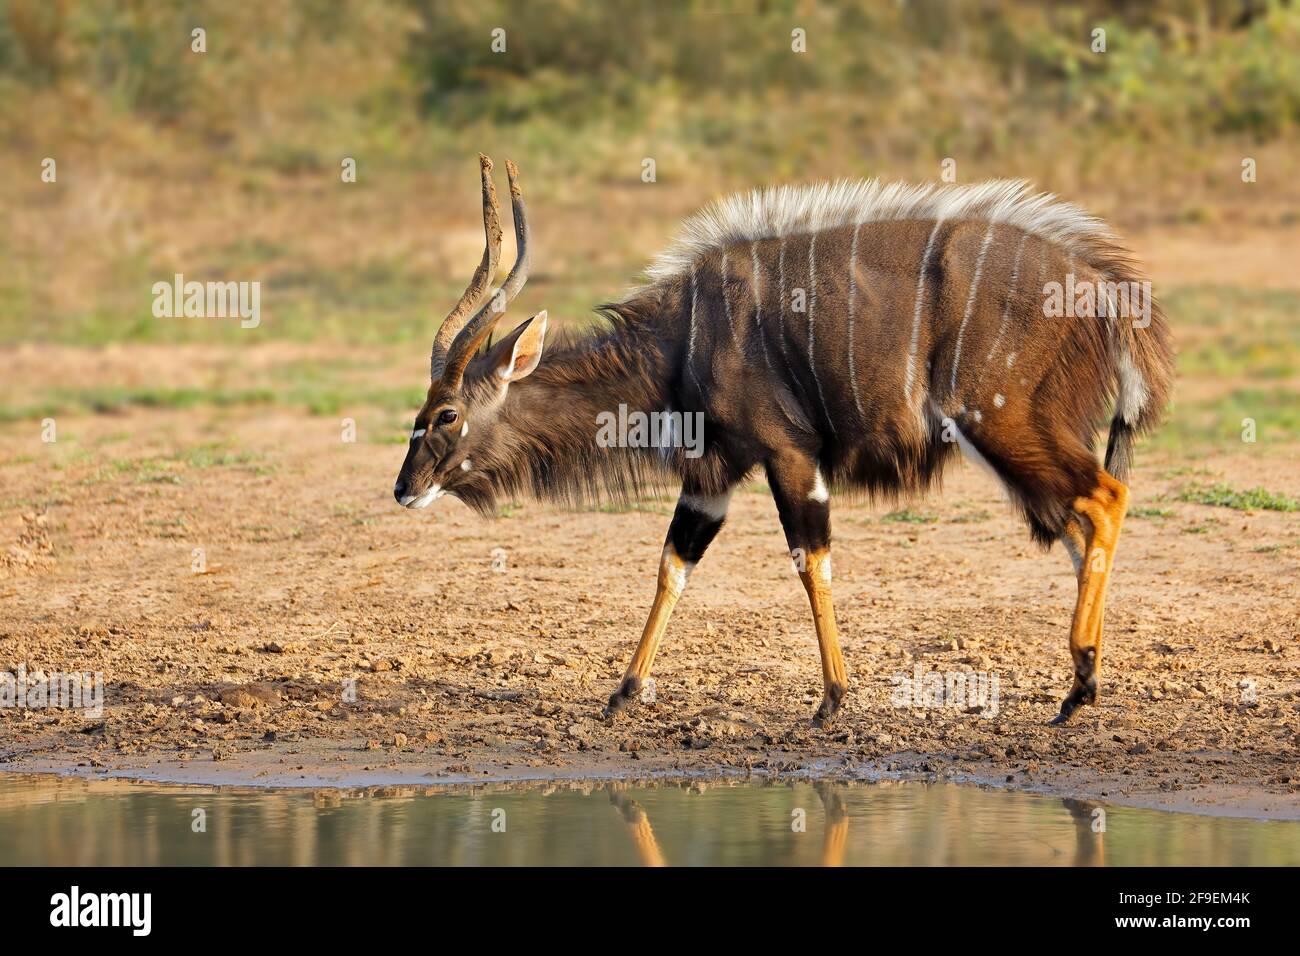 Male nyala antelope (Tragelaphus angasii), Mkuze game reserve, South Africa Stock Photo